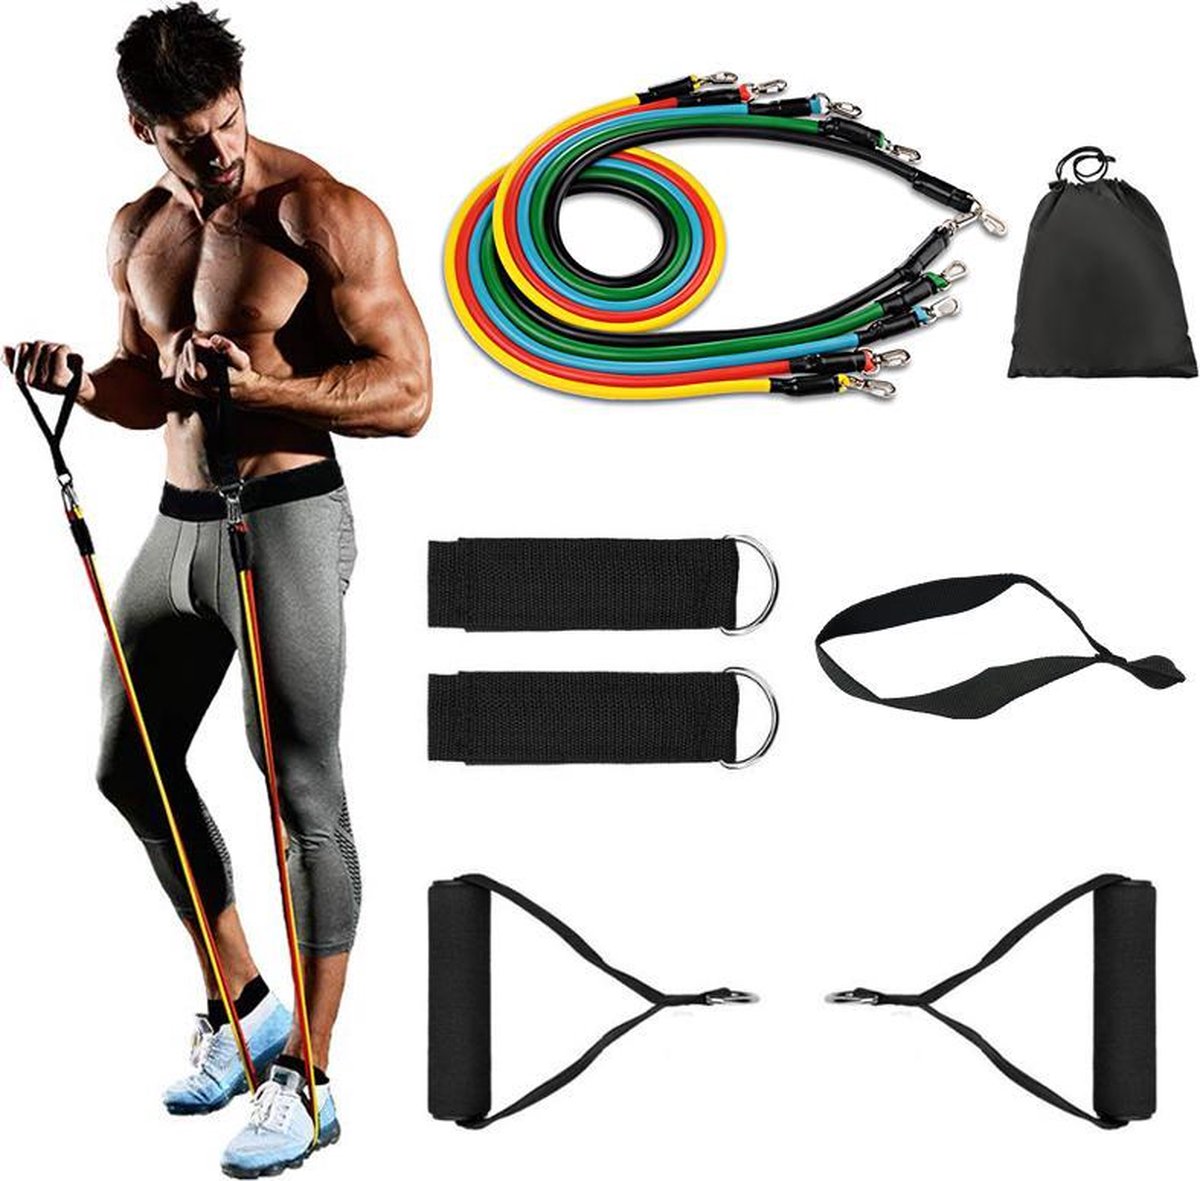 Fitness elastiek - Sportelastieken - Elastieken weerstandsbanden set